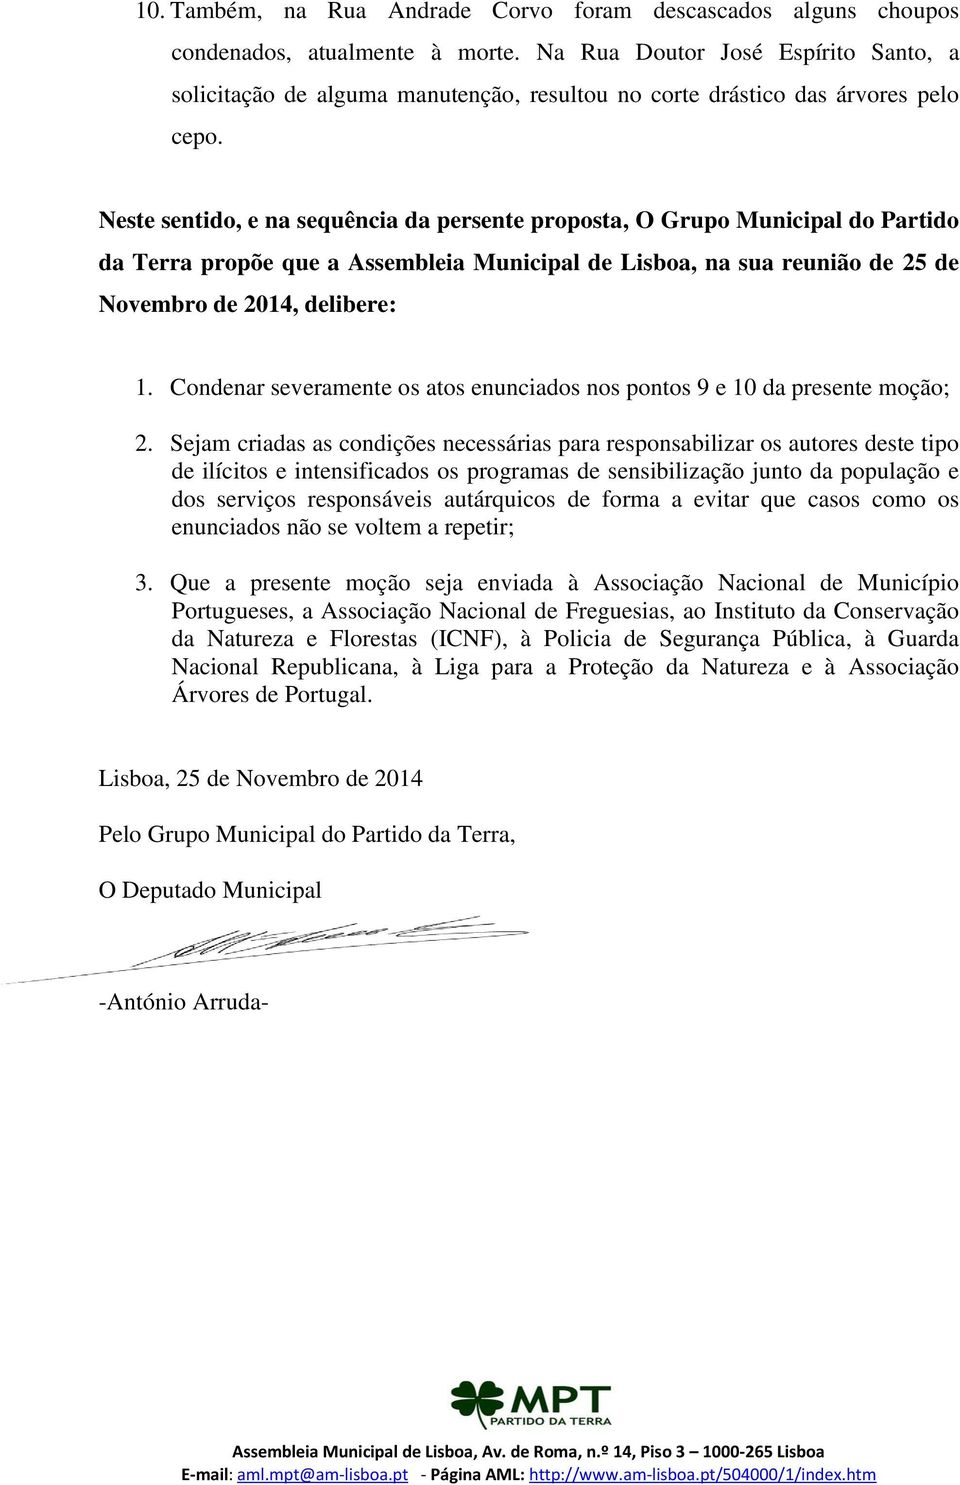 Neste sentido, e na sequência da persente proposta, O Grupo Municipal do Partido da Terra propõe que a Assembleia Municipal de Lisboa, na sua reunião de 25 de Novembro de 2014, delibere: 1.